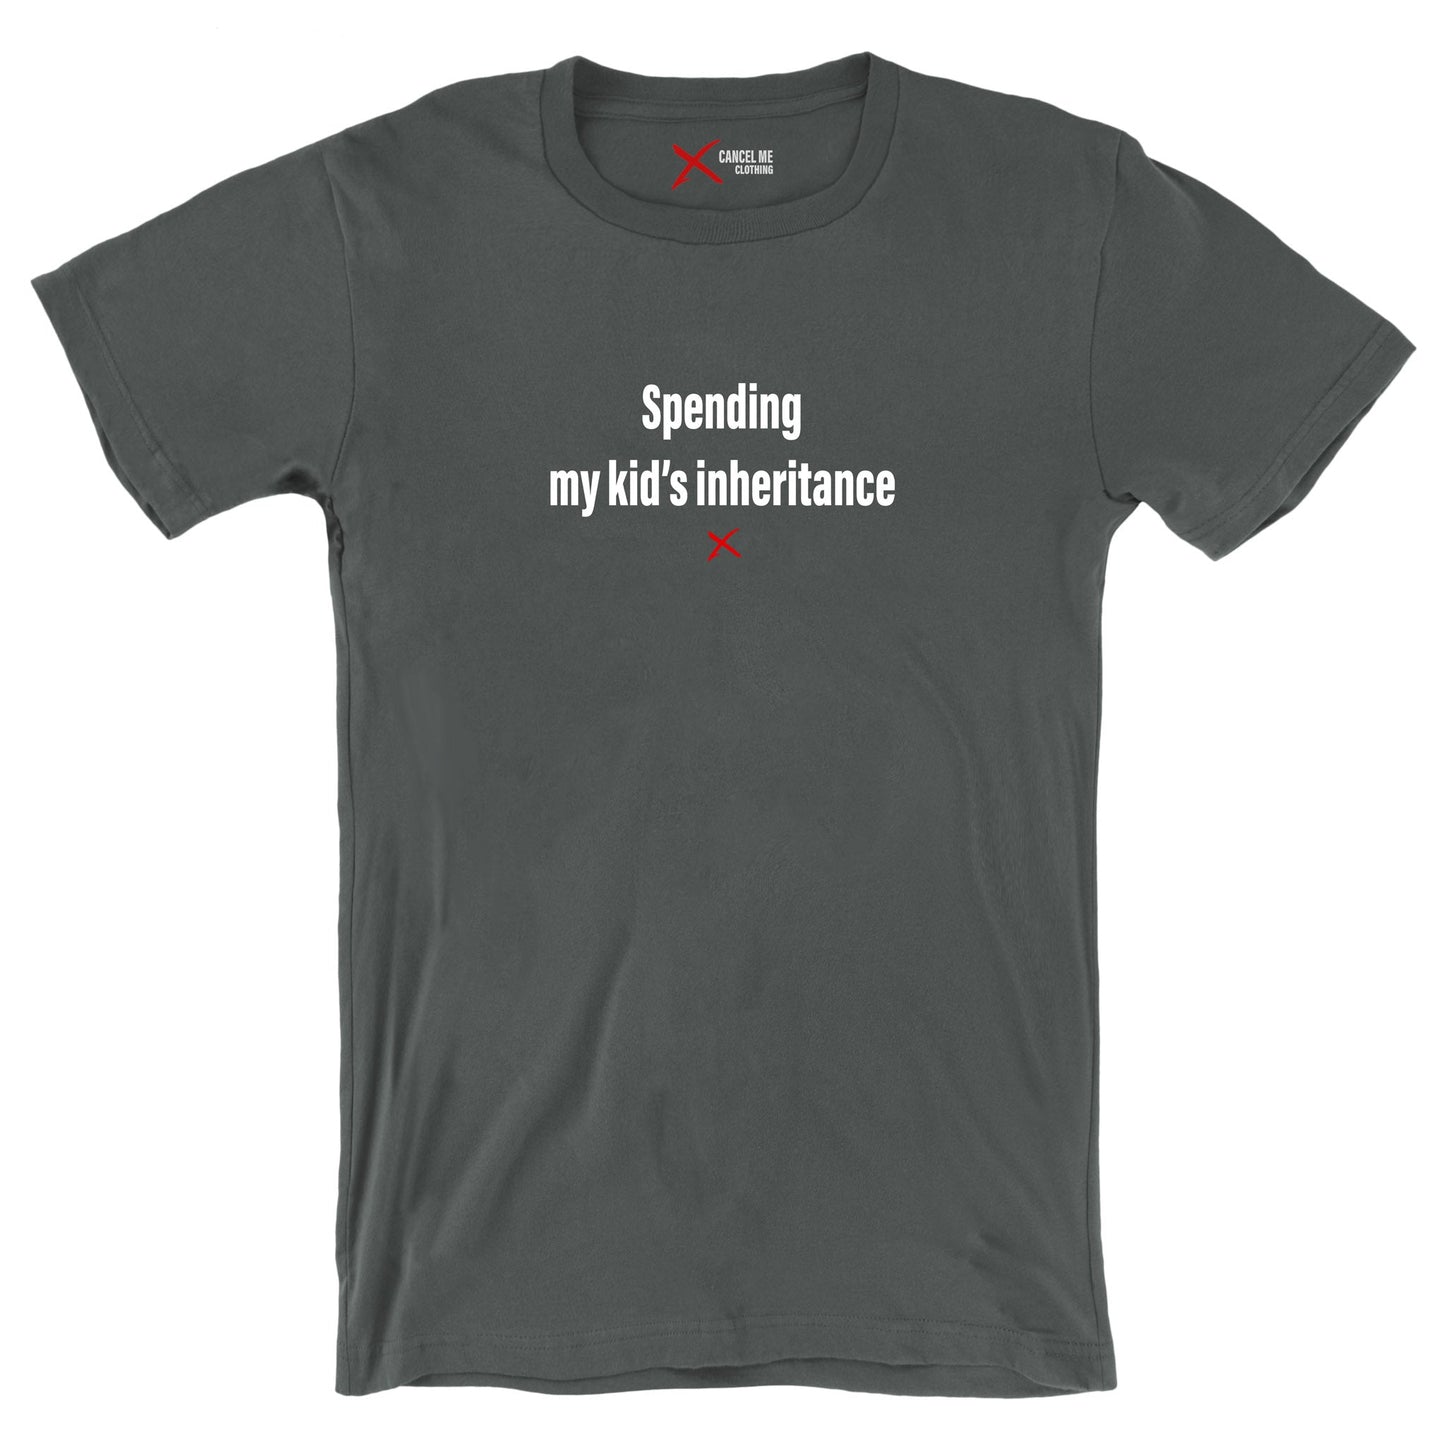 Spending my kid's inheritance - Shirt